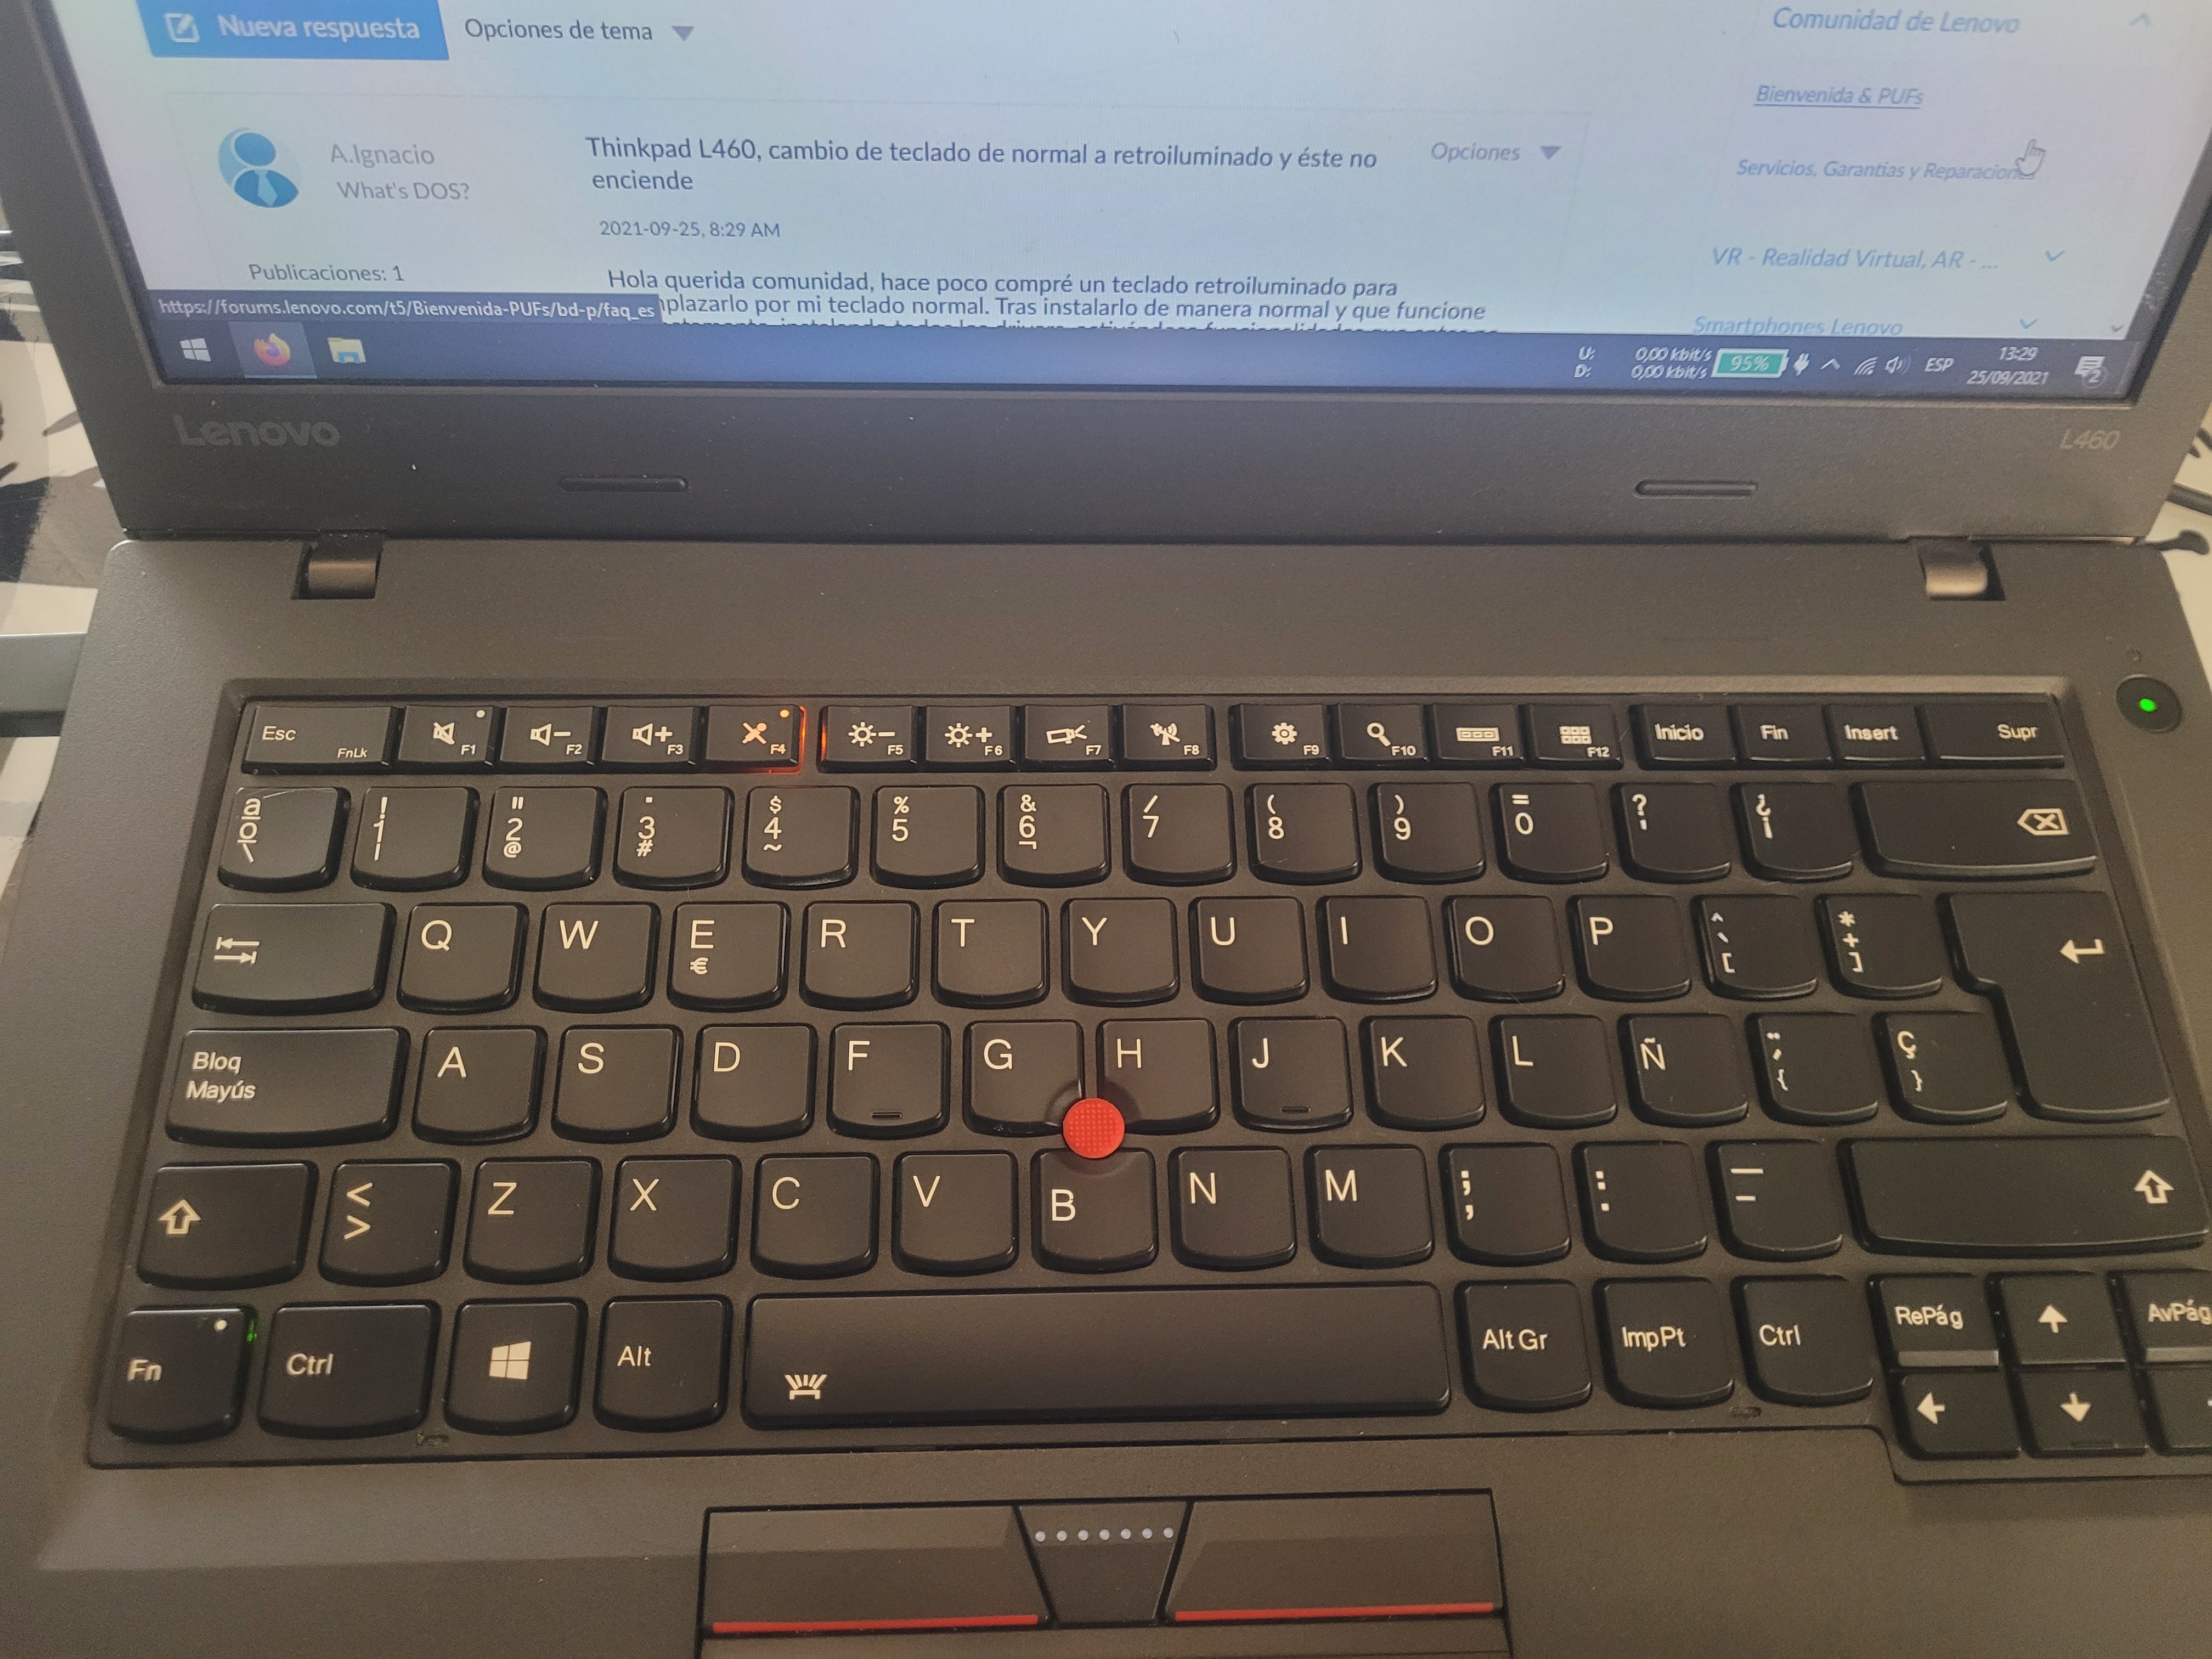 Thinkpad-L460-cambio-de-teclado-de-normal-a-retroiluminado-y-éste-no- enciende - Comunidad de Lenovo - LENOVO COMMUNITY